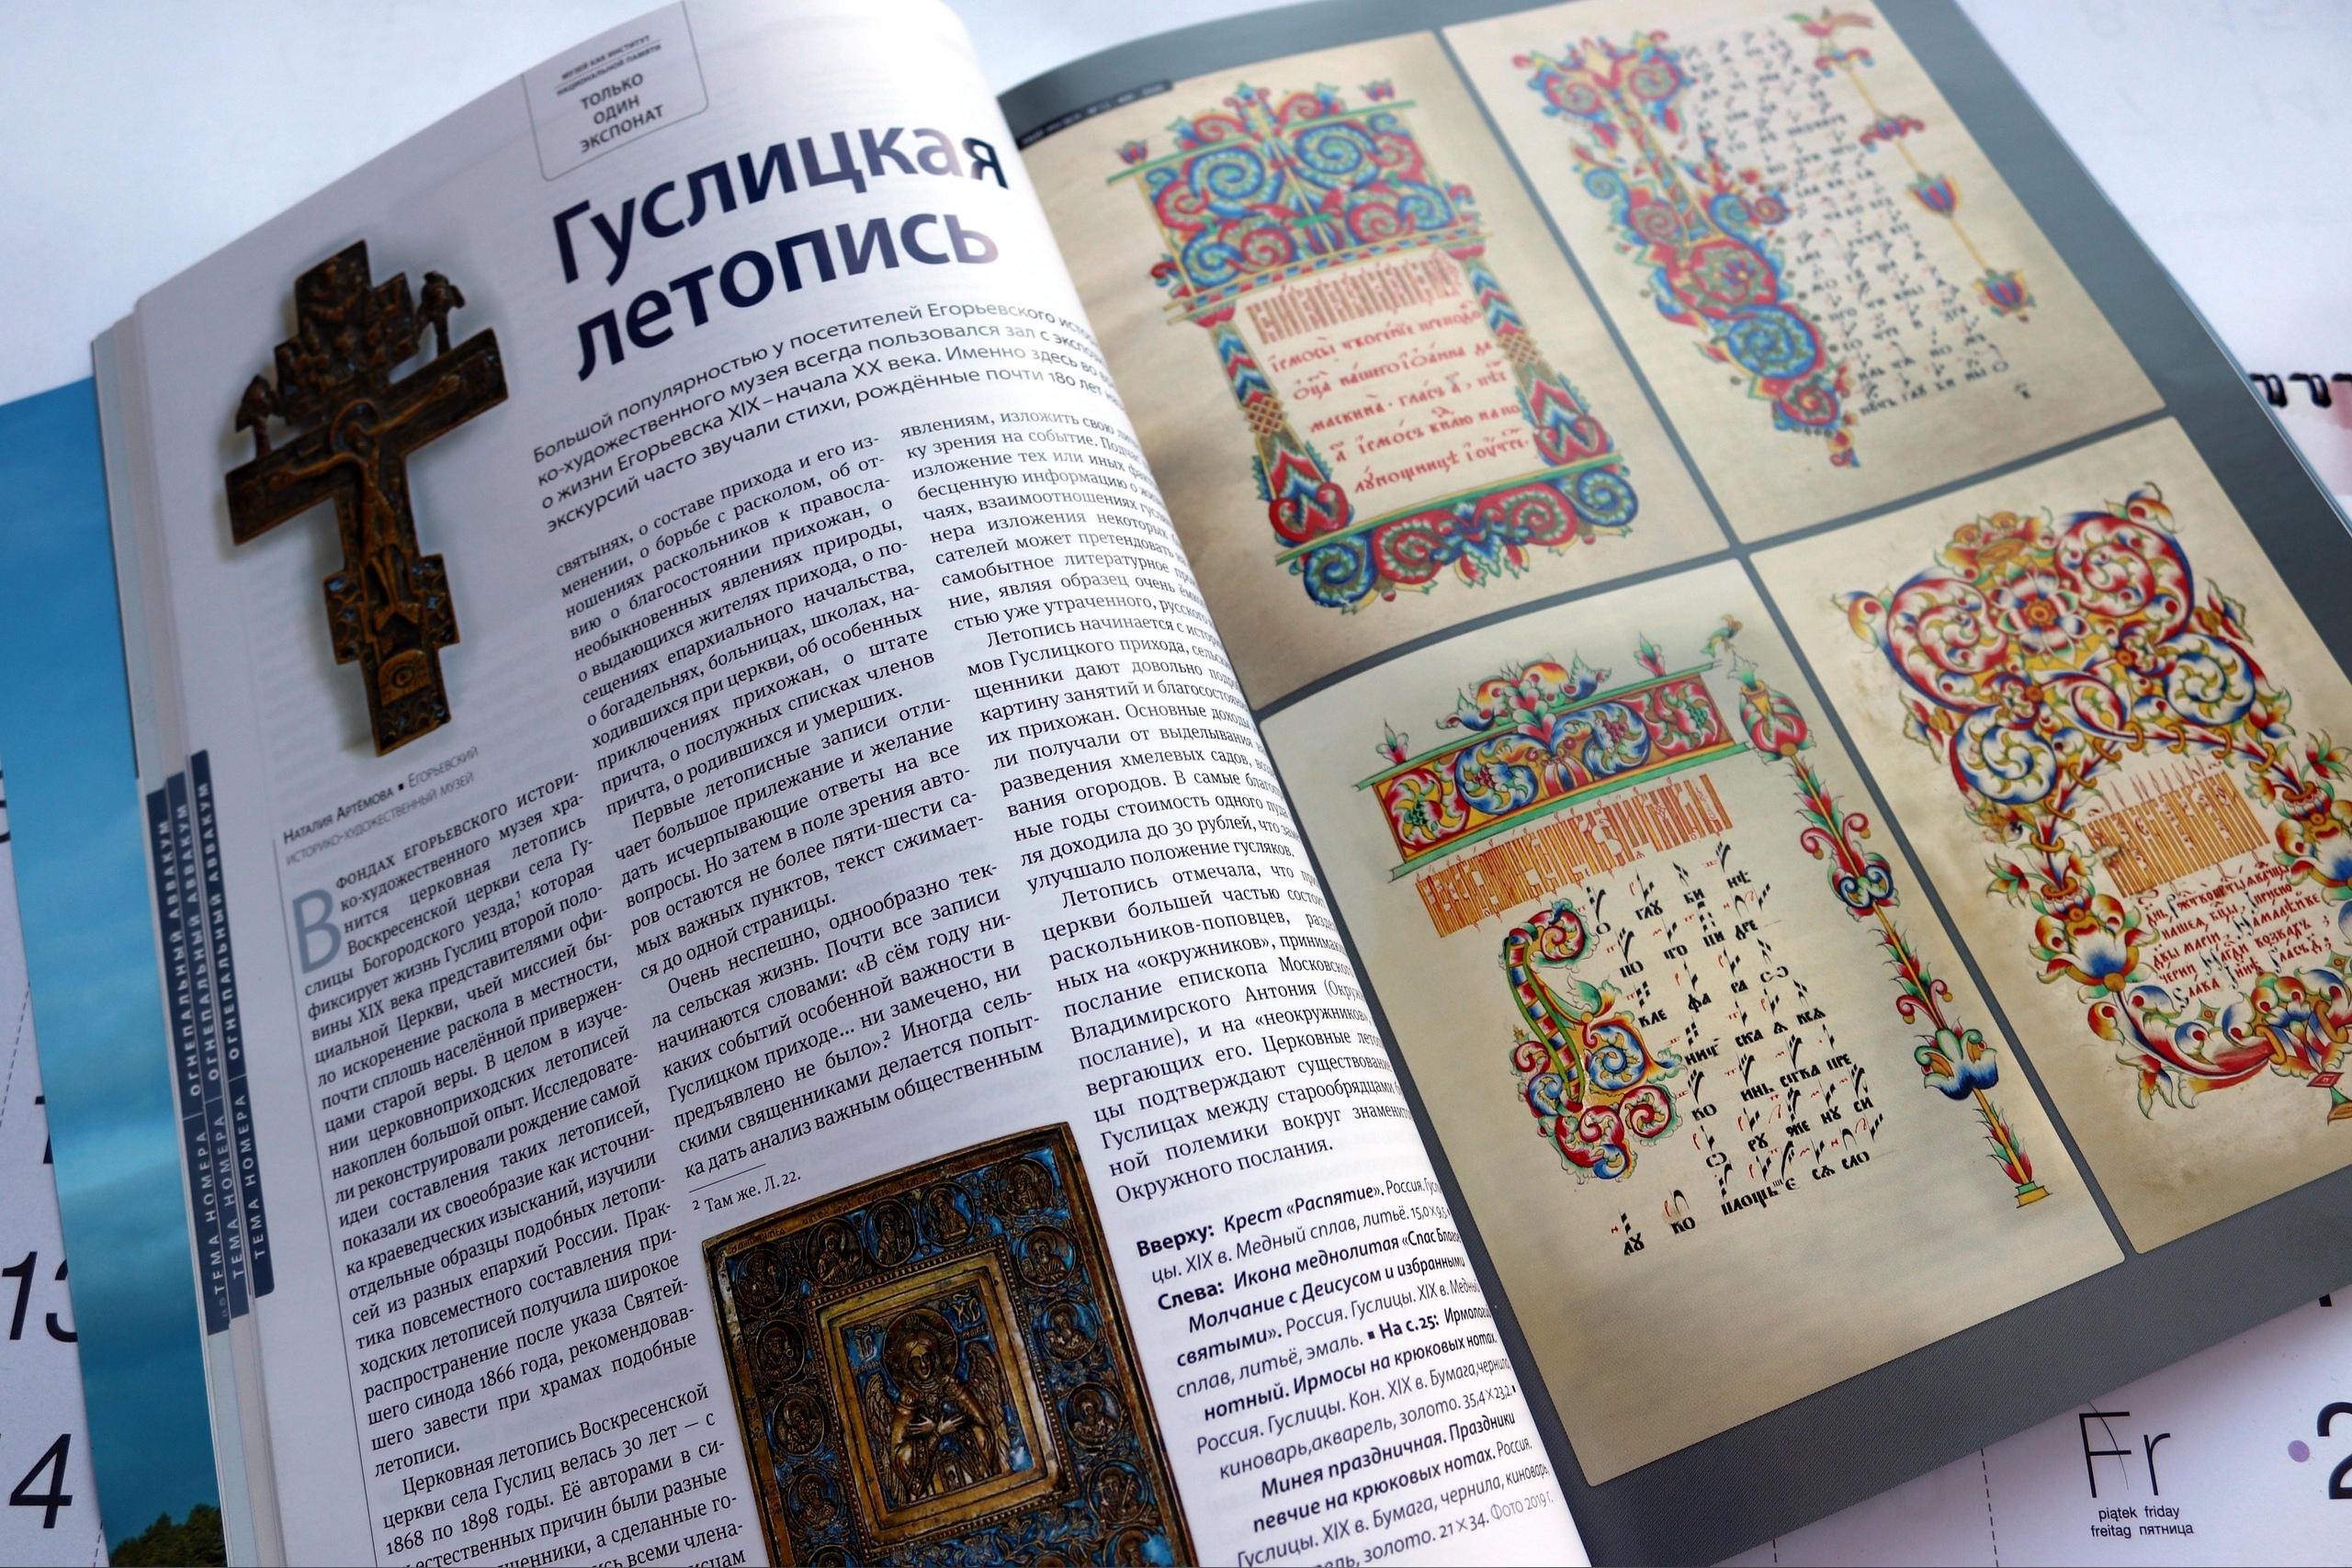 Статья о гуслицкой летописи стала лучшей публикацией журнала «Мир музея» за 2020 год